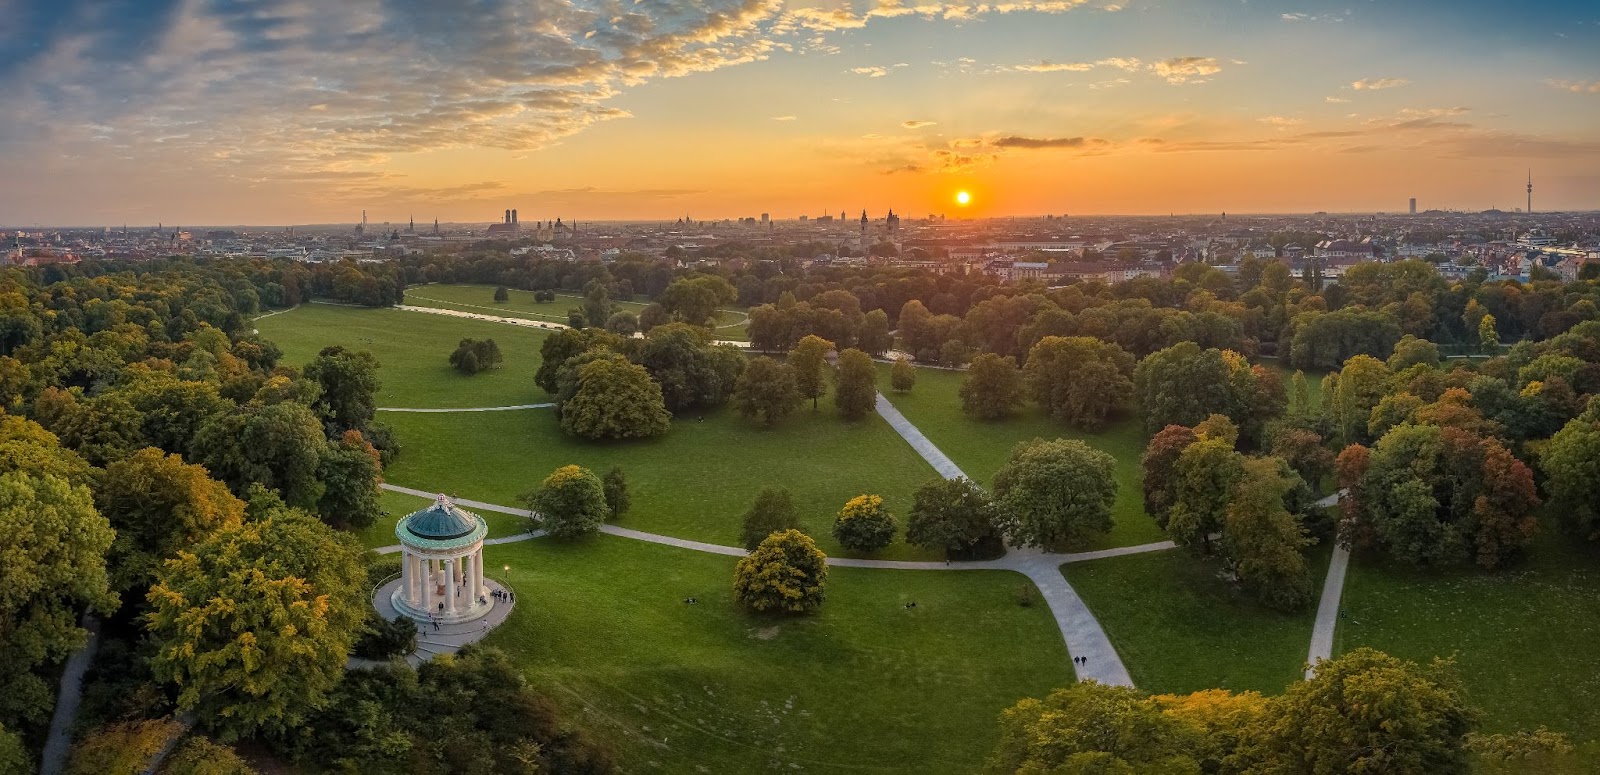 Aerial view over the Englischer Garden in Munich, at sunrise